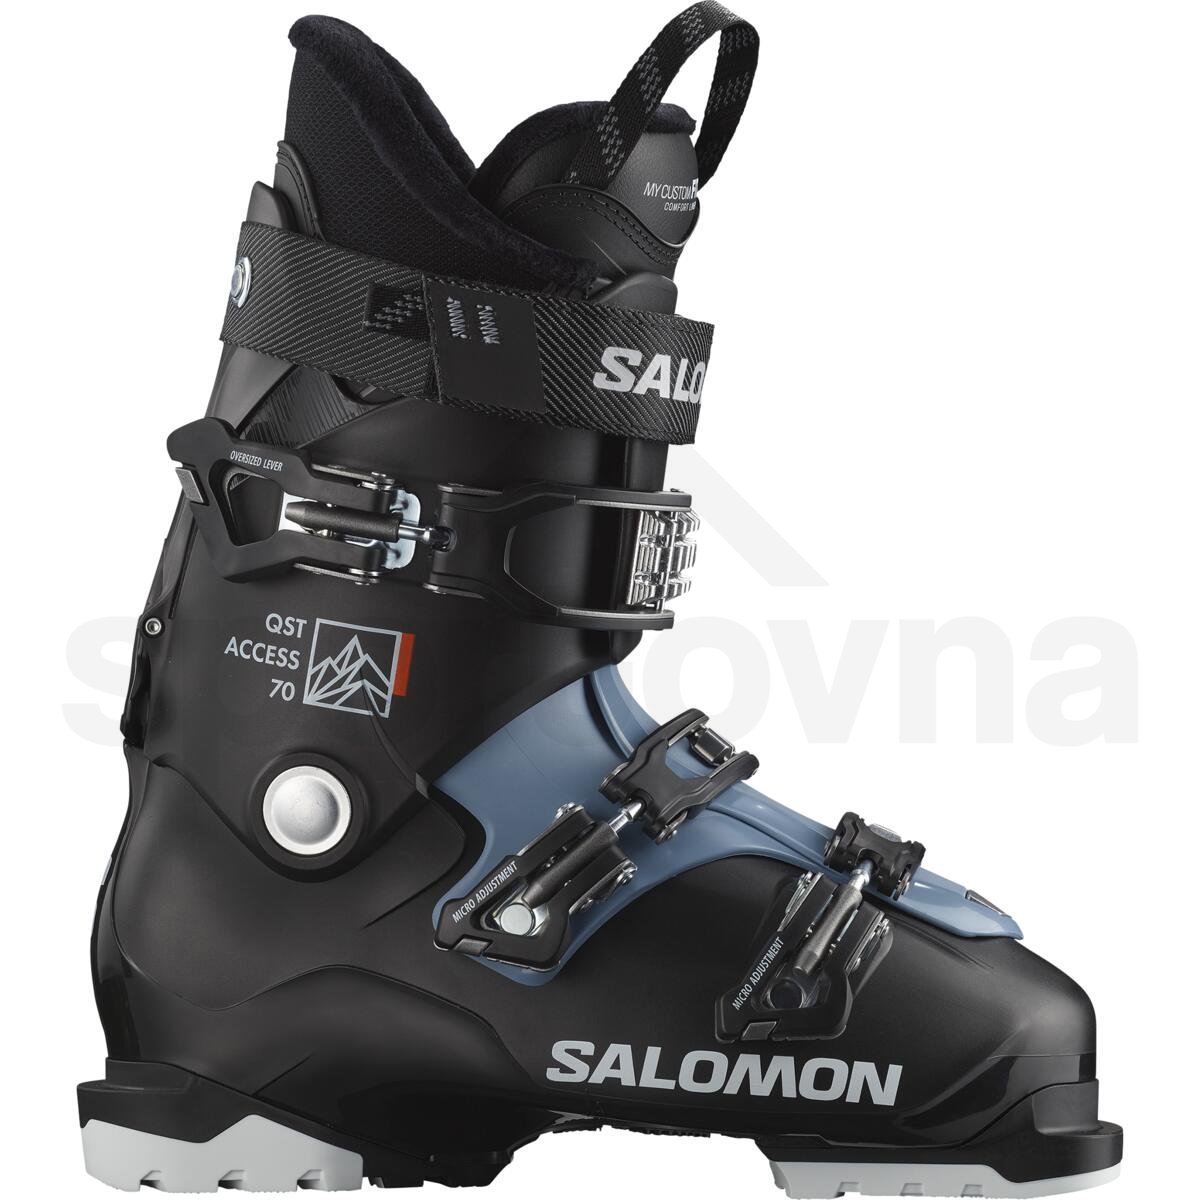 Lyžařské boty Salomon Qst Access 70 M - černá/modrá